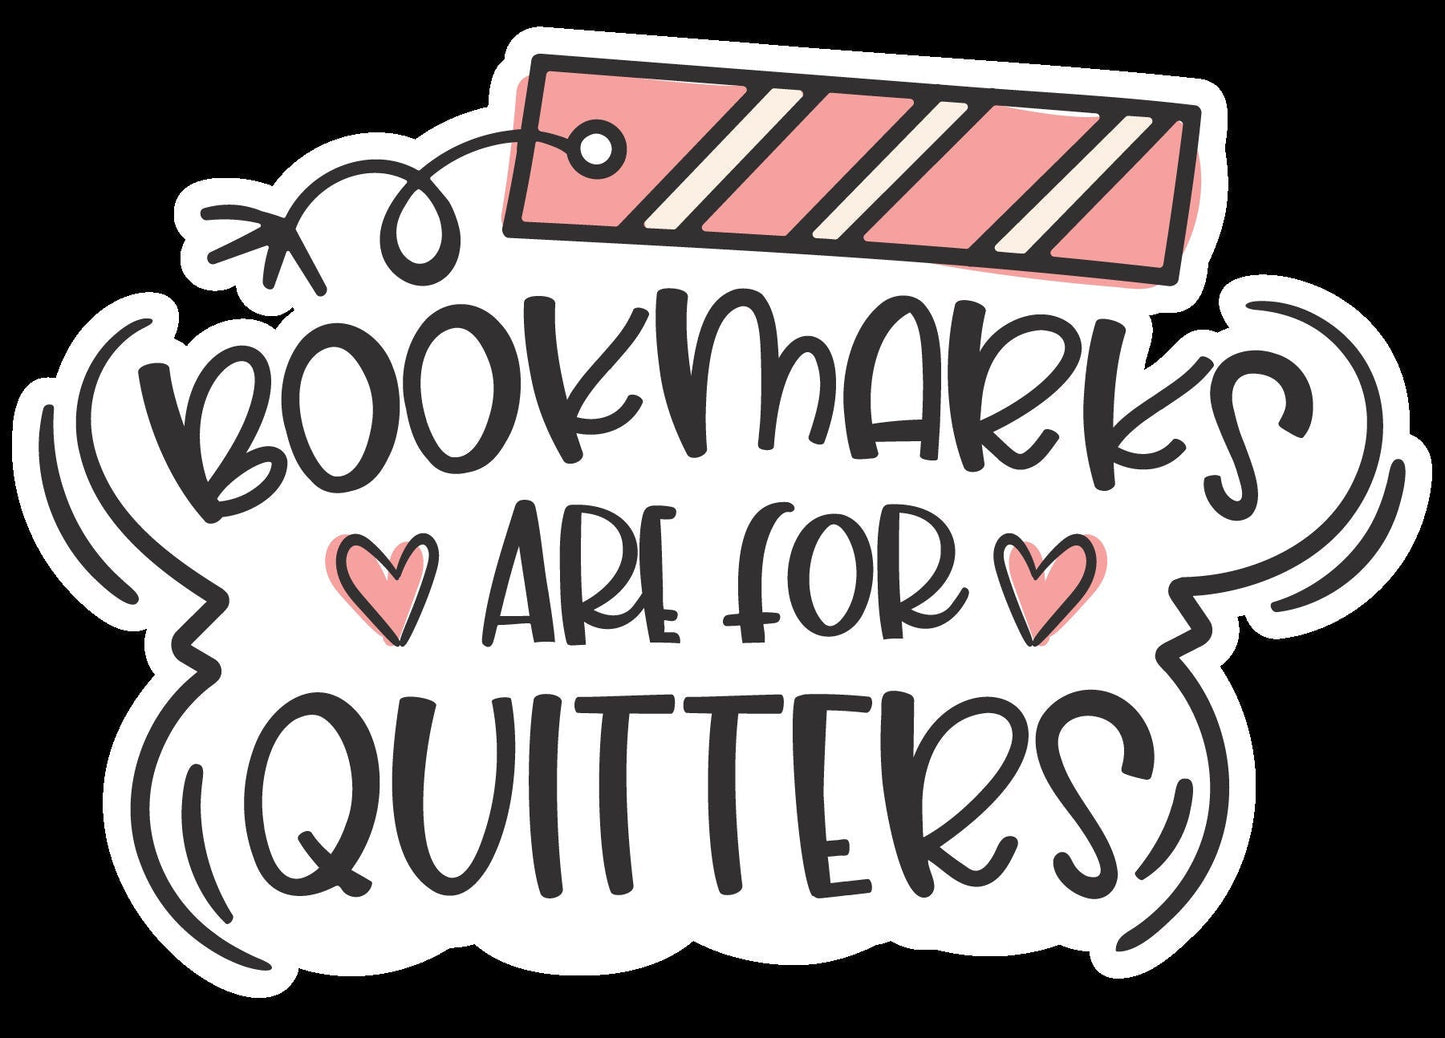 BookMarks are for Quitters Sticker, Sticker,Vinyl sticker, laptop sticker